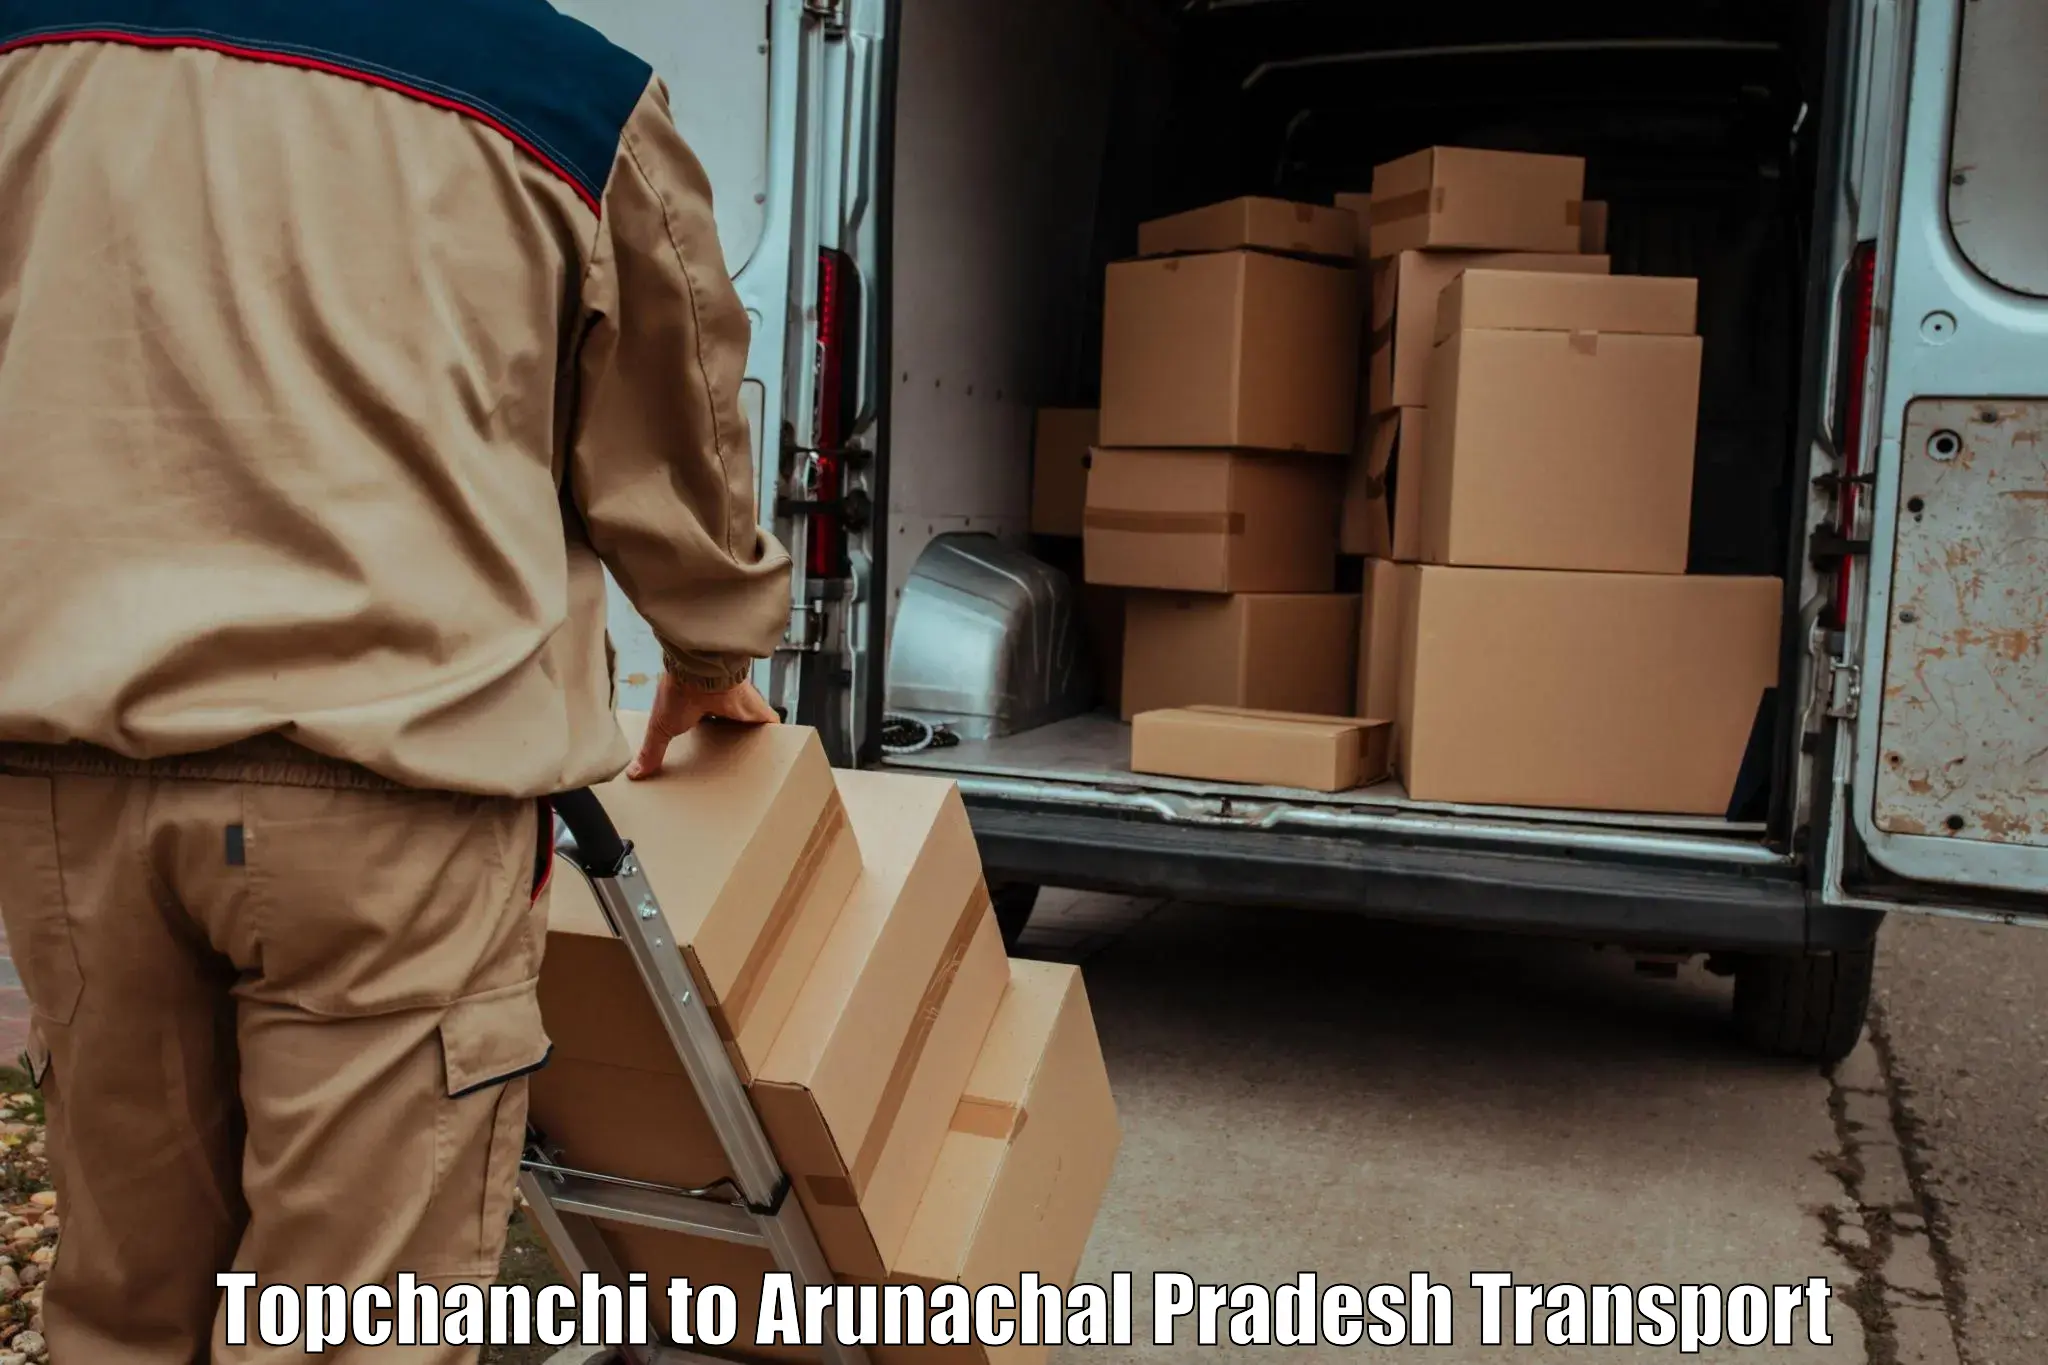 Nearest transport service Topchanchi to Arunachal Pradesh